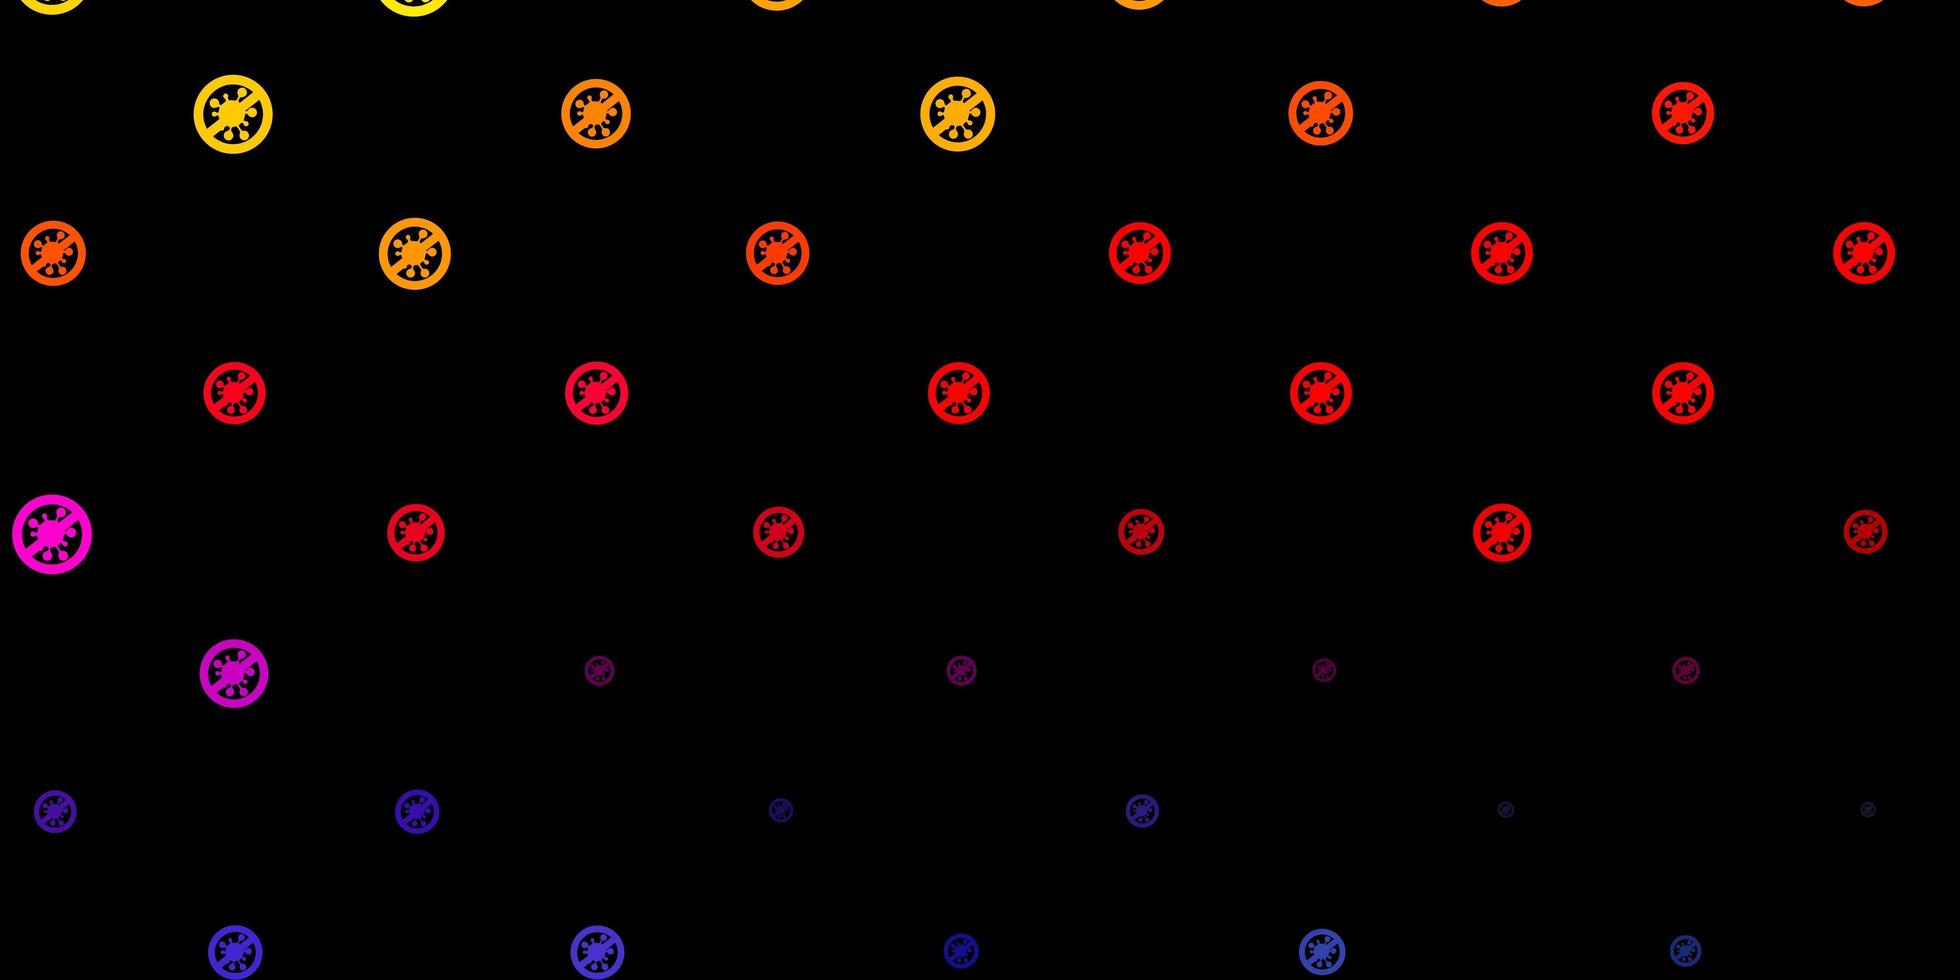 mörkrosa, gul vektorstruktur med sjukdomssymboler. vektor